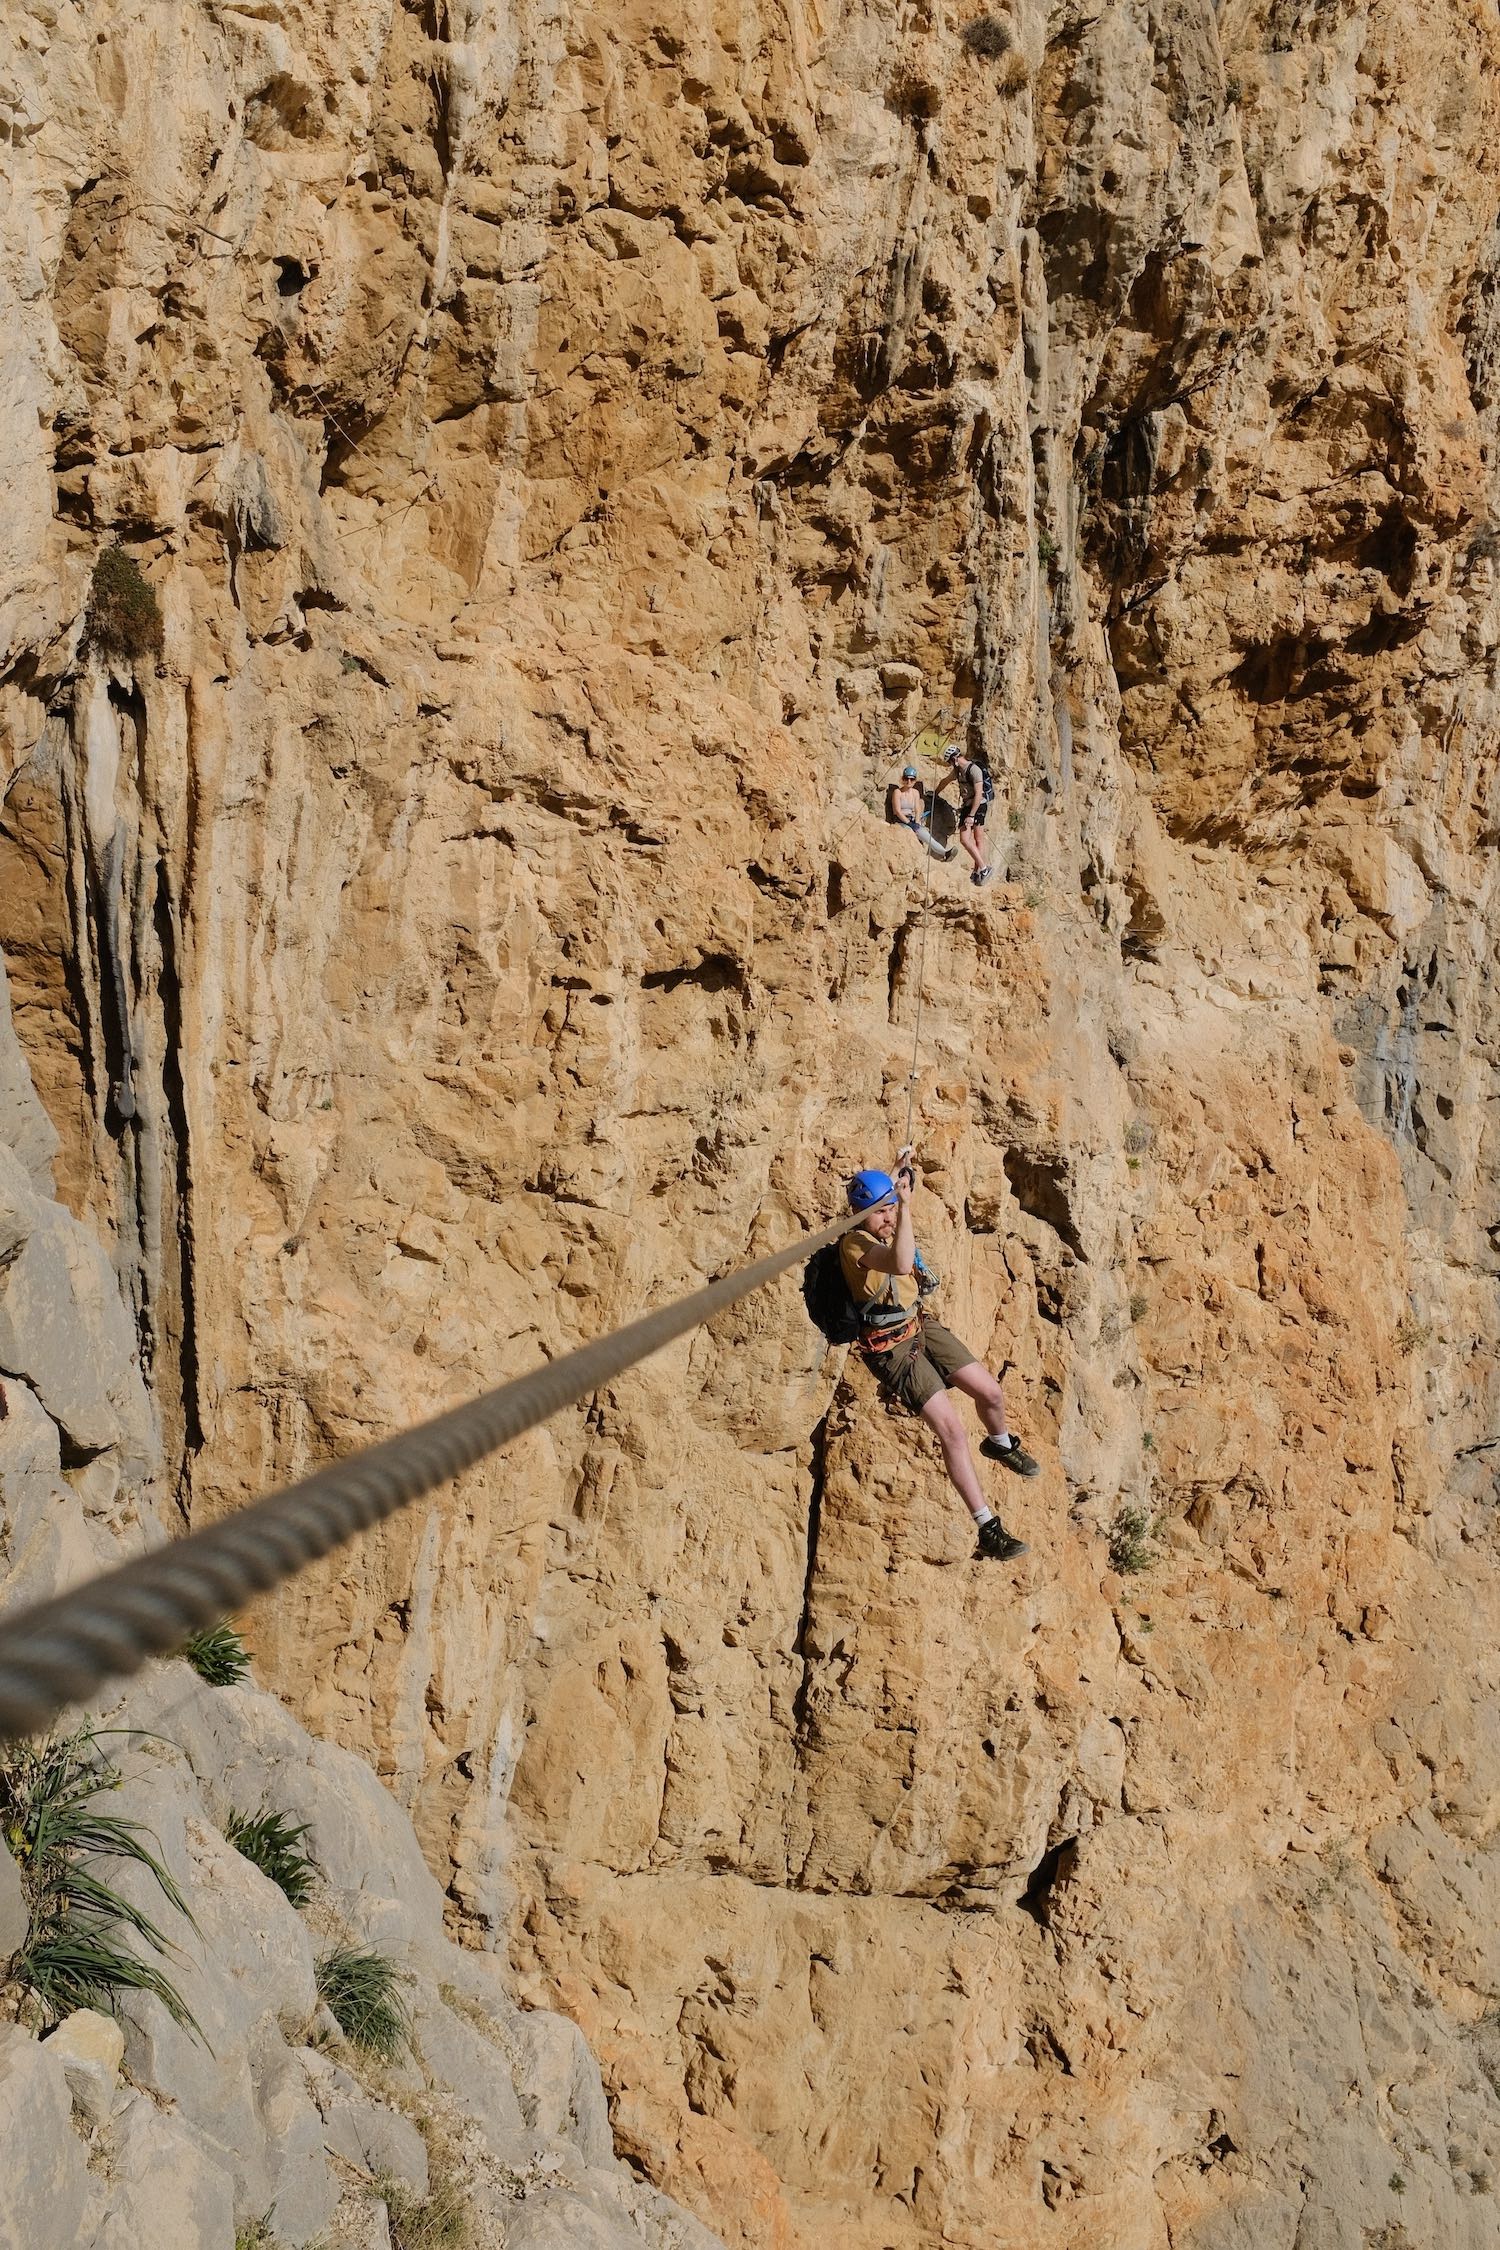 Owen climbing in El Chorro